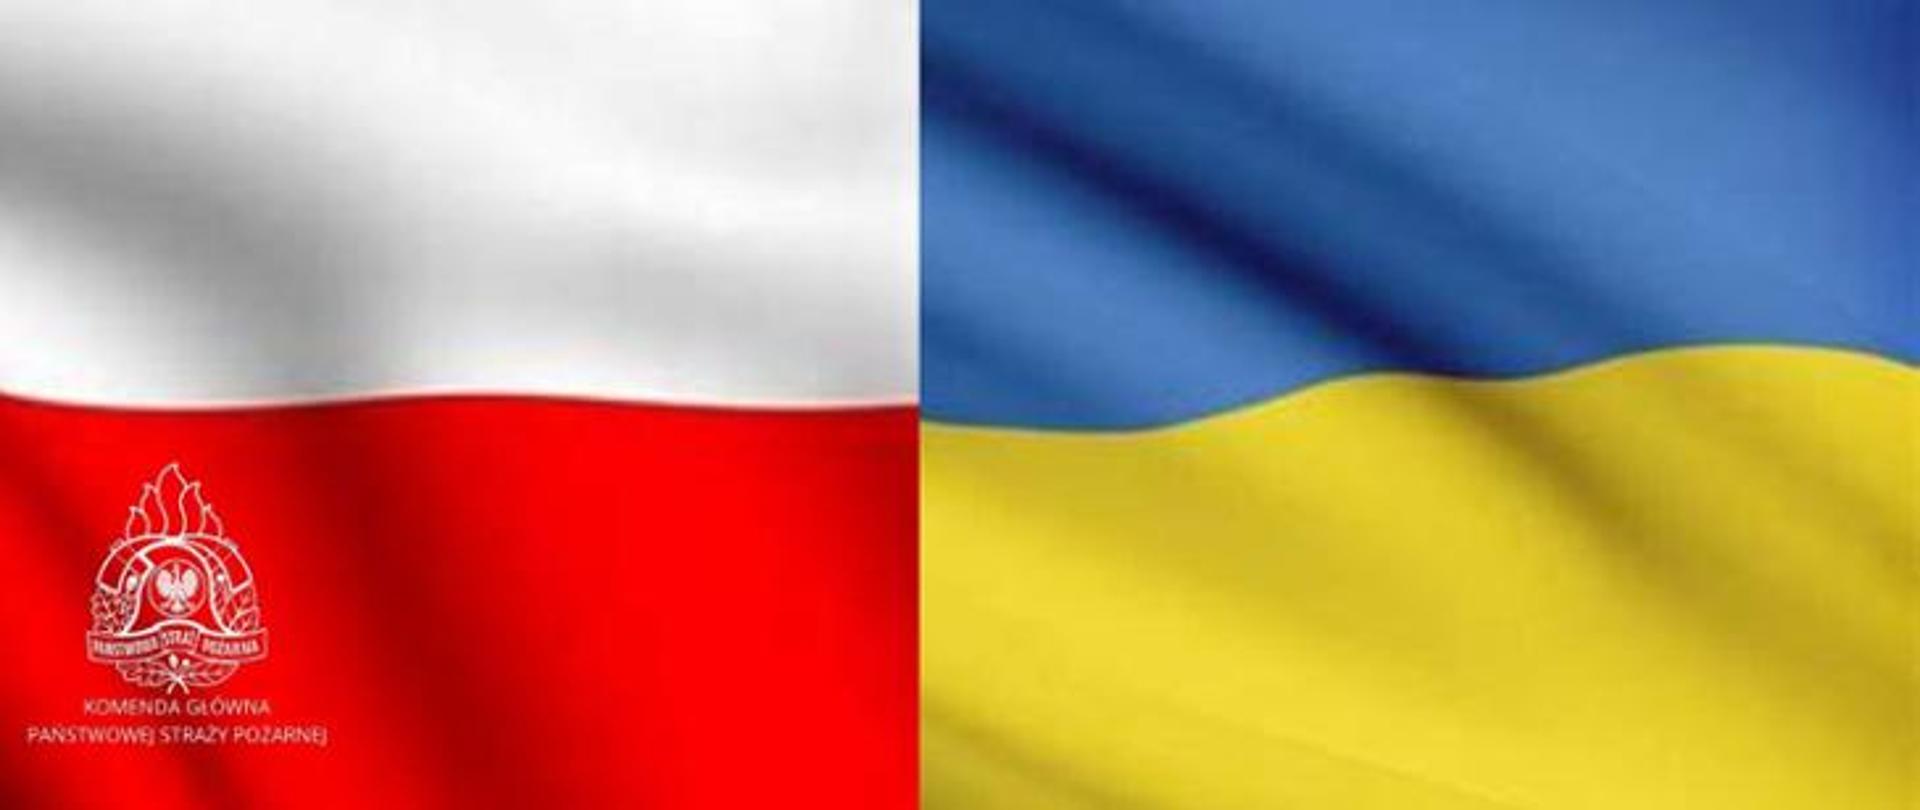 Flaga Polski / Flaga Ukrainy